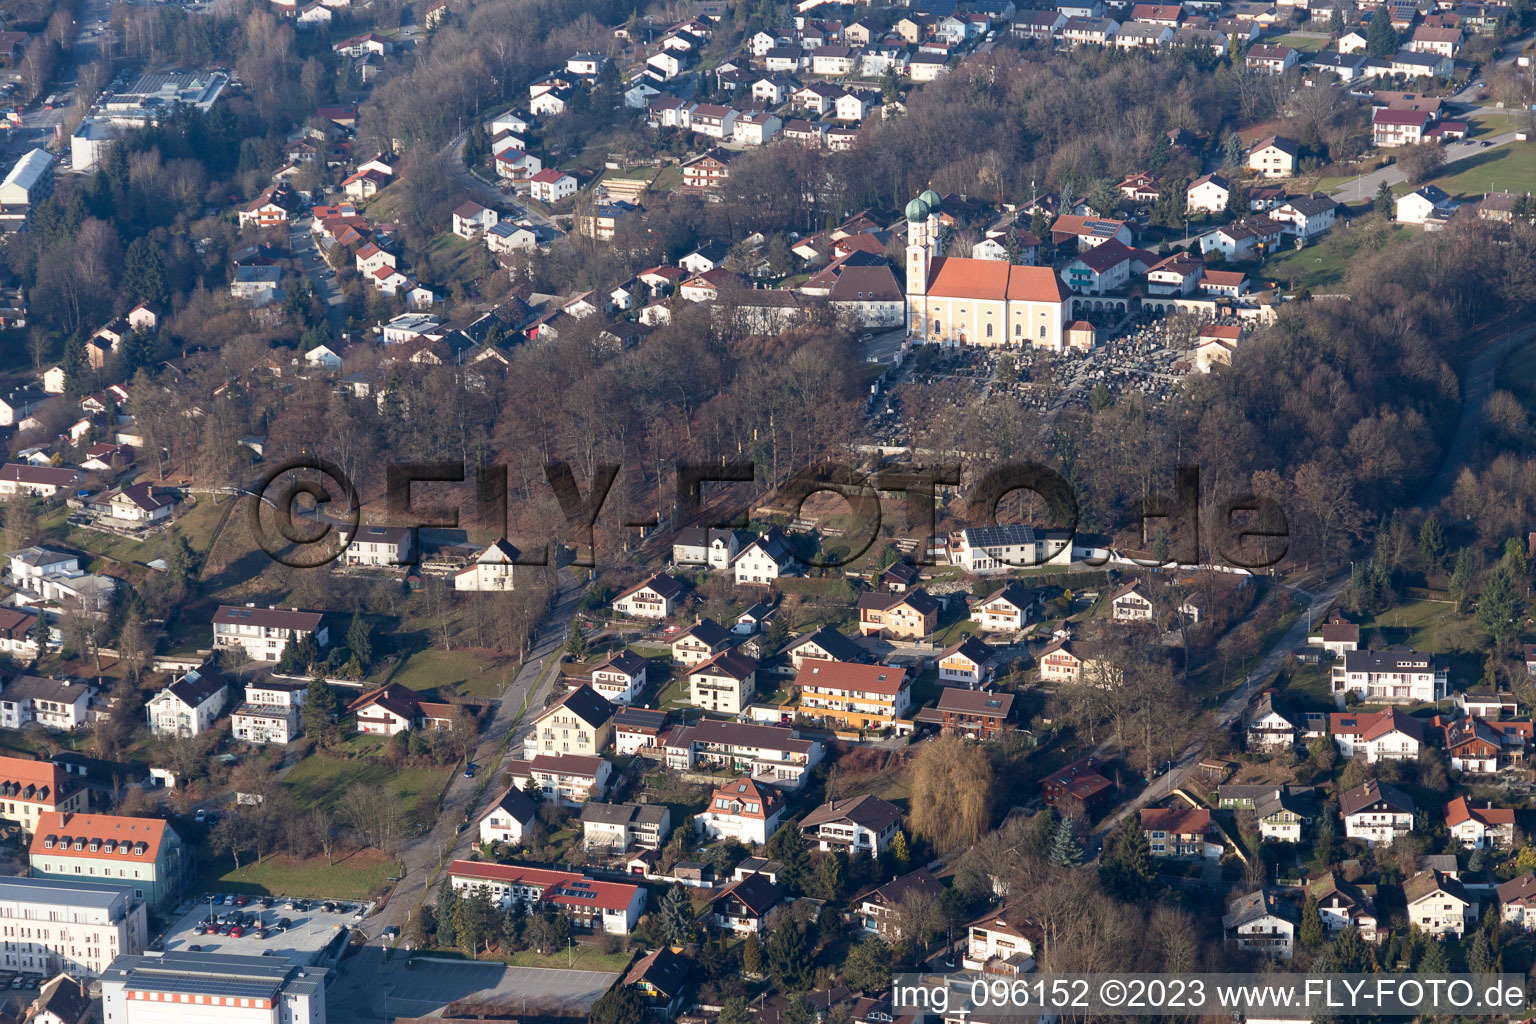 Pfarrkirchen im Bundesland Bayern, Deutschland von der Drohne aus gesehen